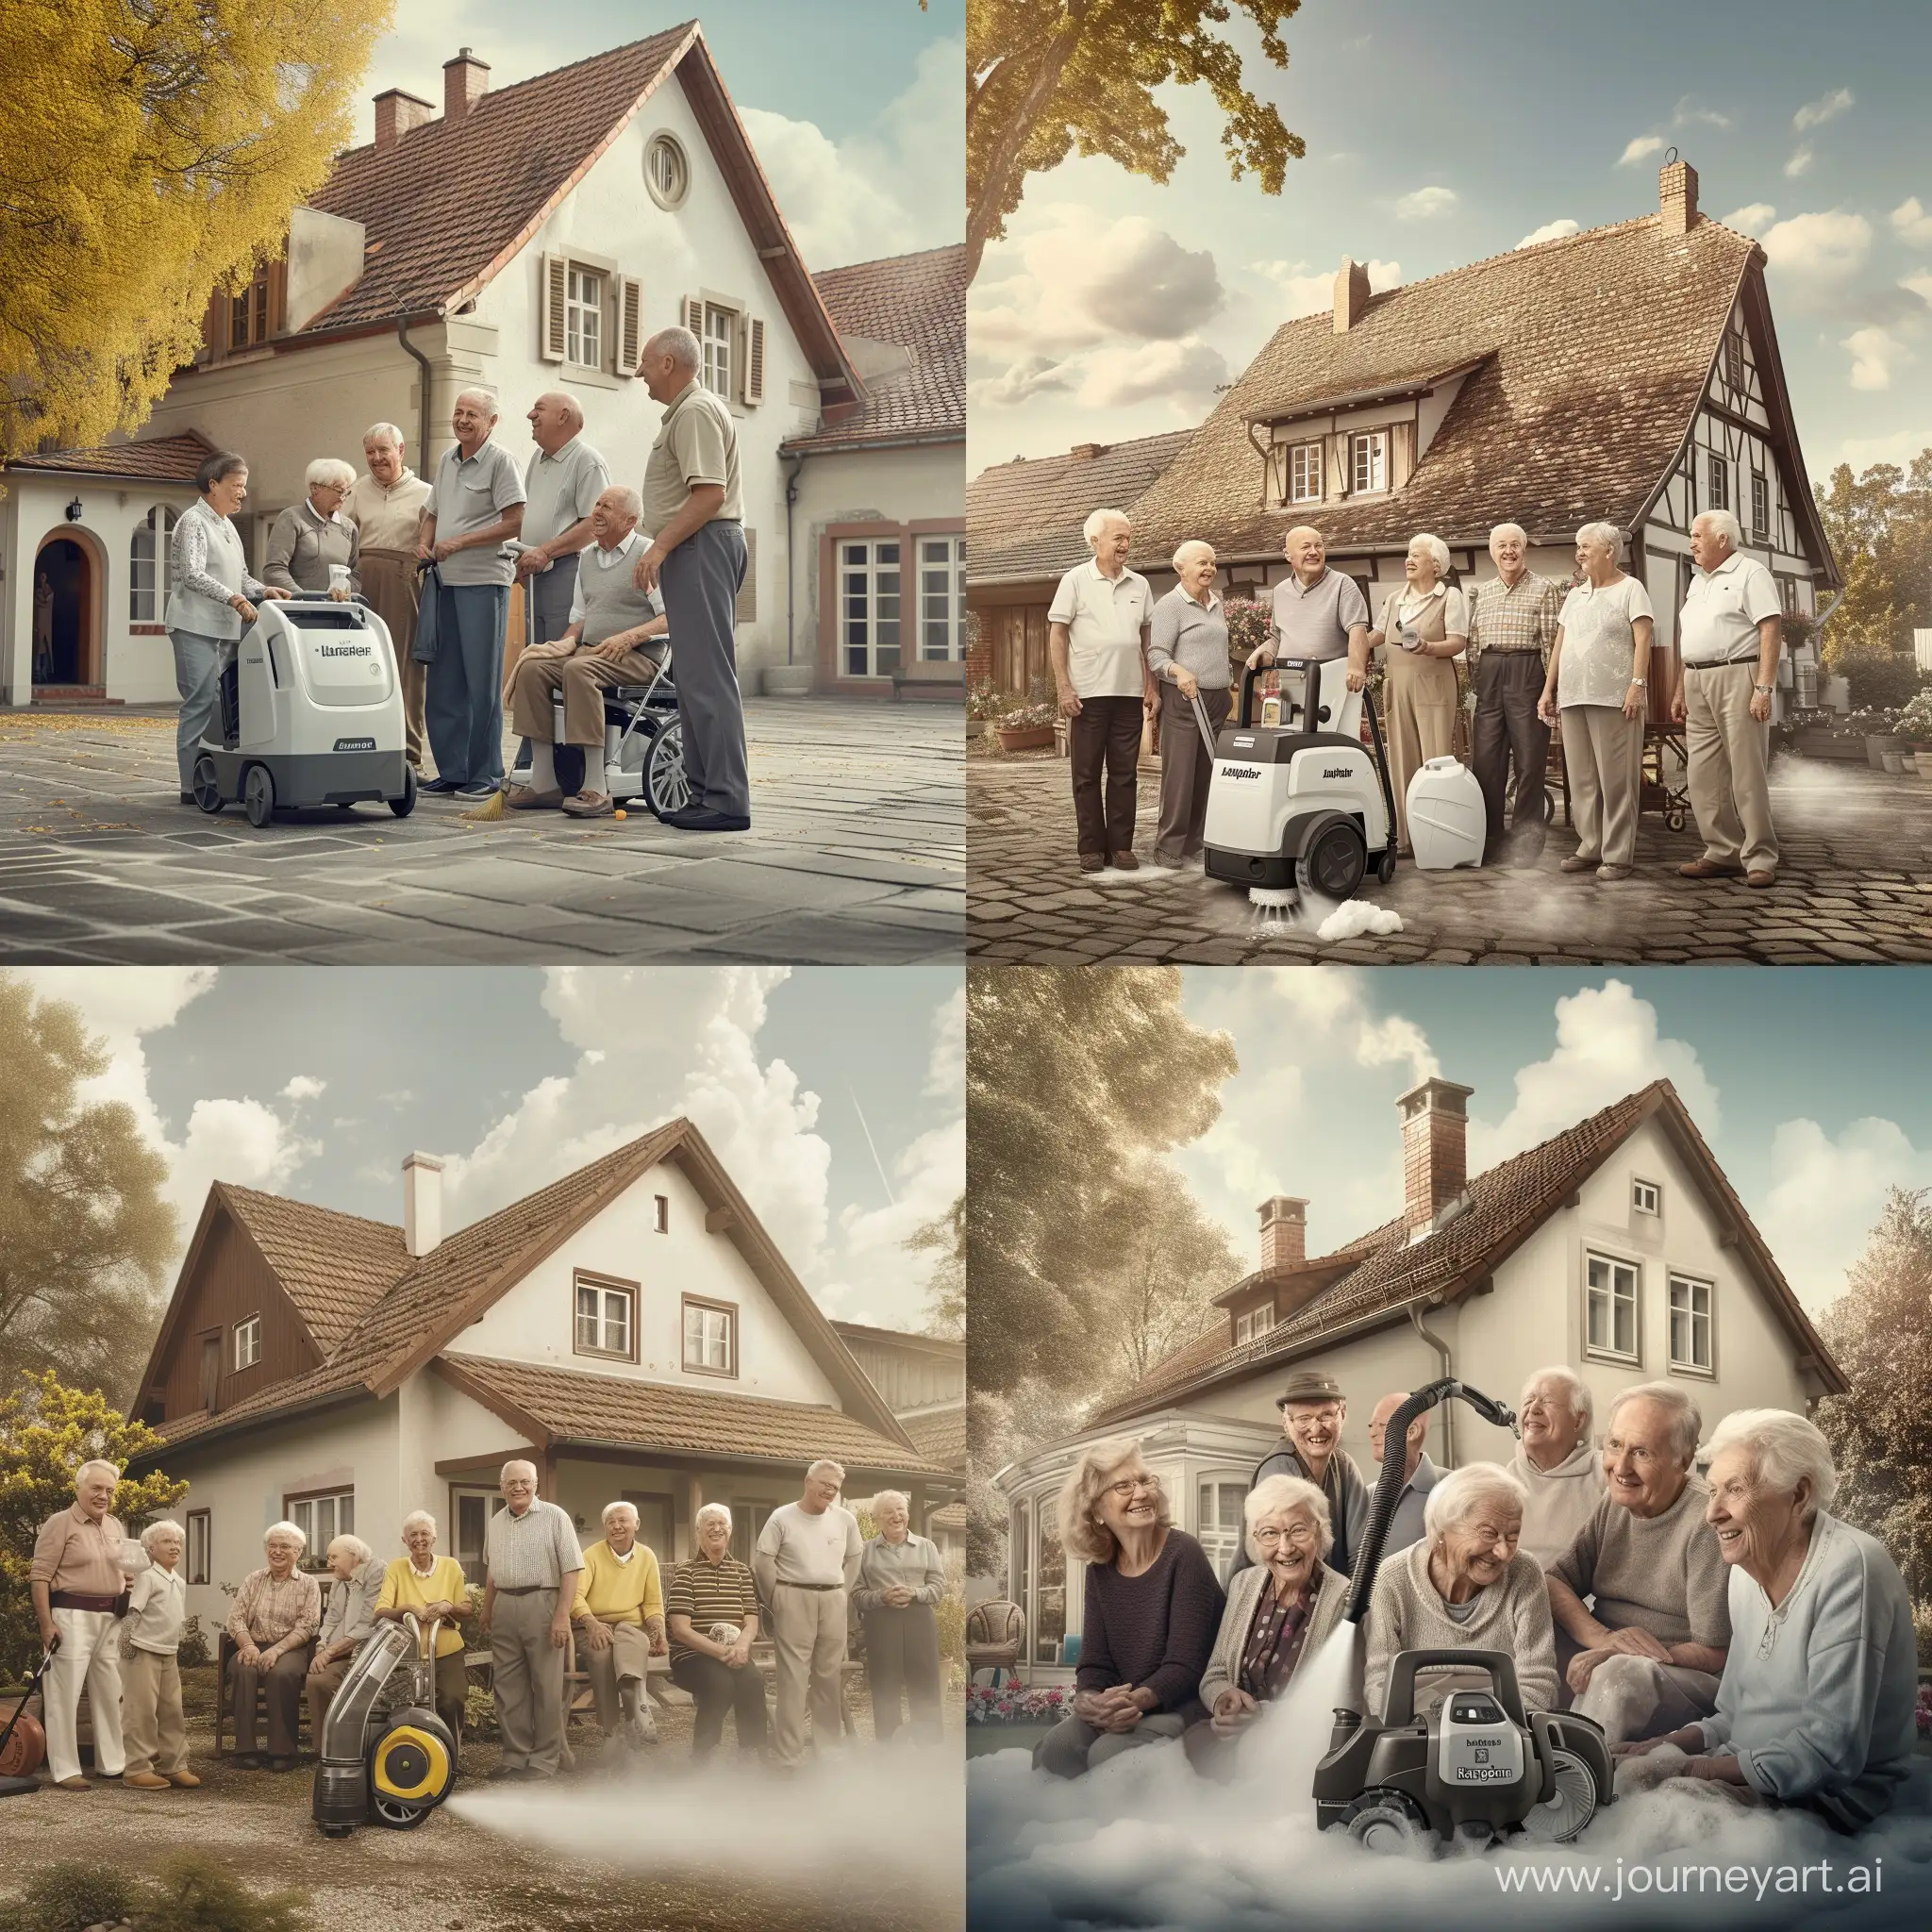 изображением старинного дома, вокруг которого собрались счастливые старики, улыбающиеся и наслаждающиеся чистотой благодаря технике Karcher, которая верно служит им уже на протяжении долгих лет.